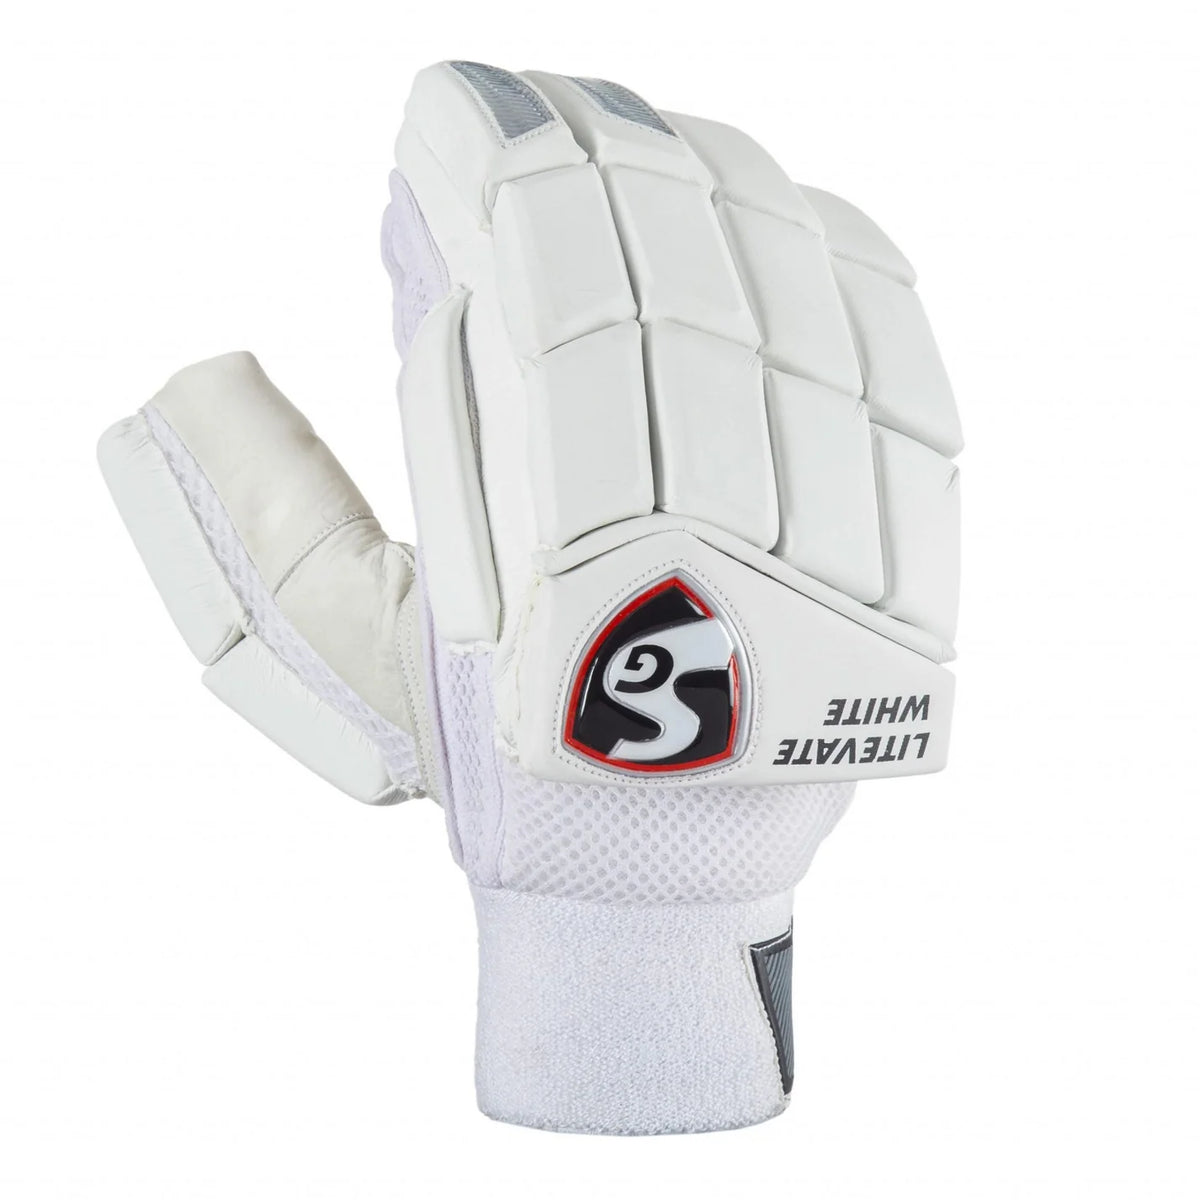 Pre-Order SG Litevate White Batting Gloves